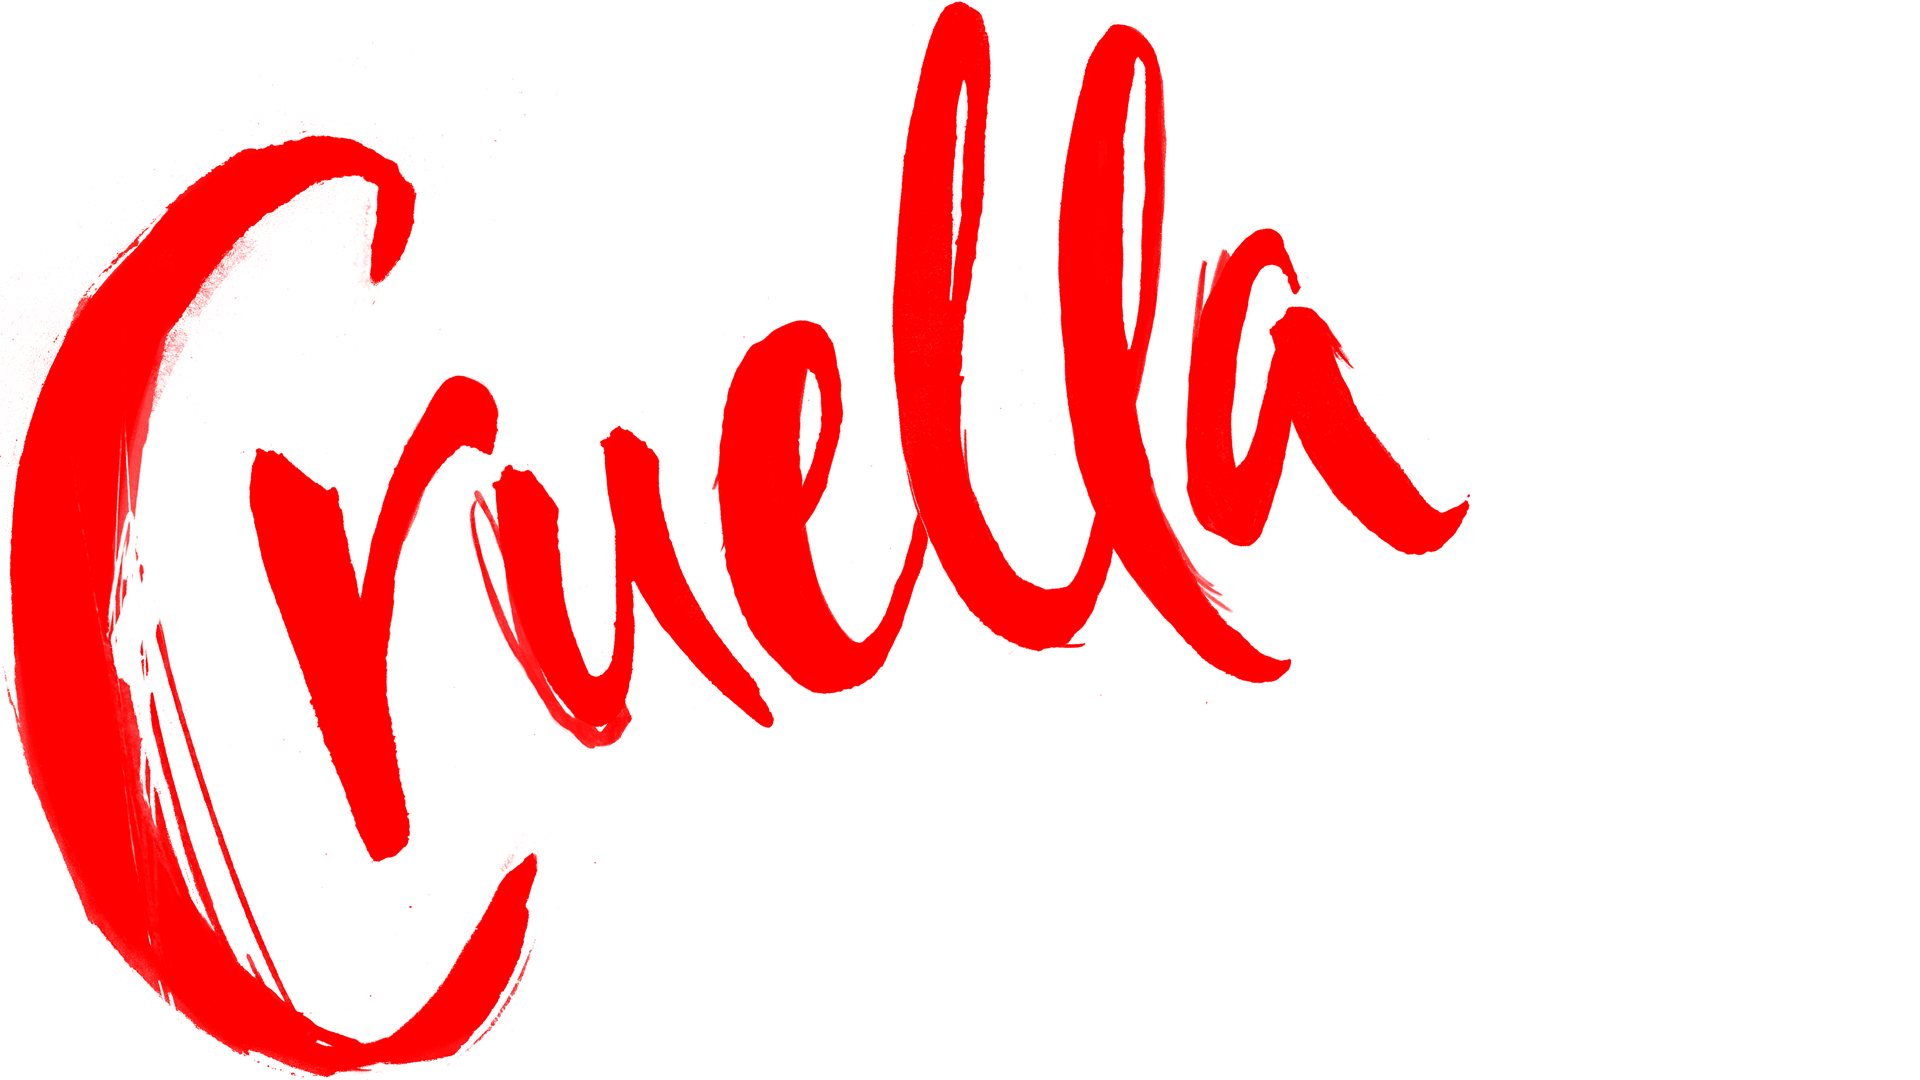 Cruella Emma Stone Disney Cruella De Vil 1920x1080